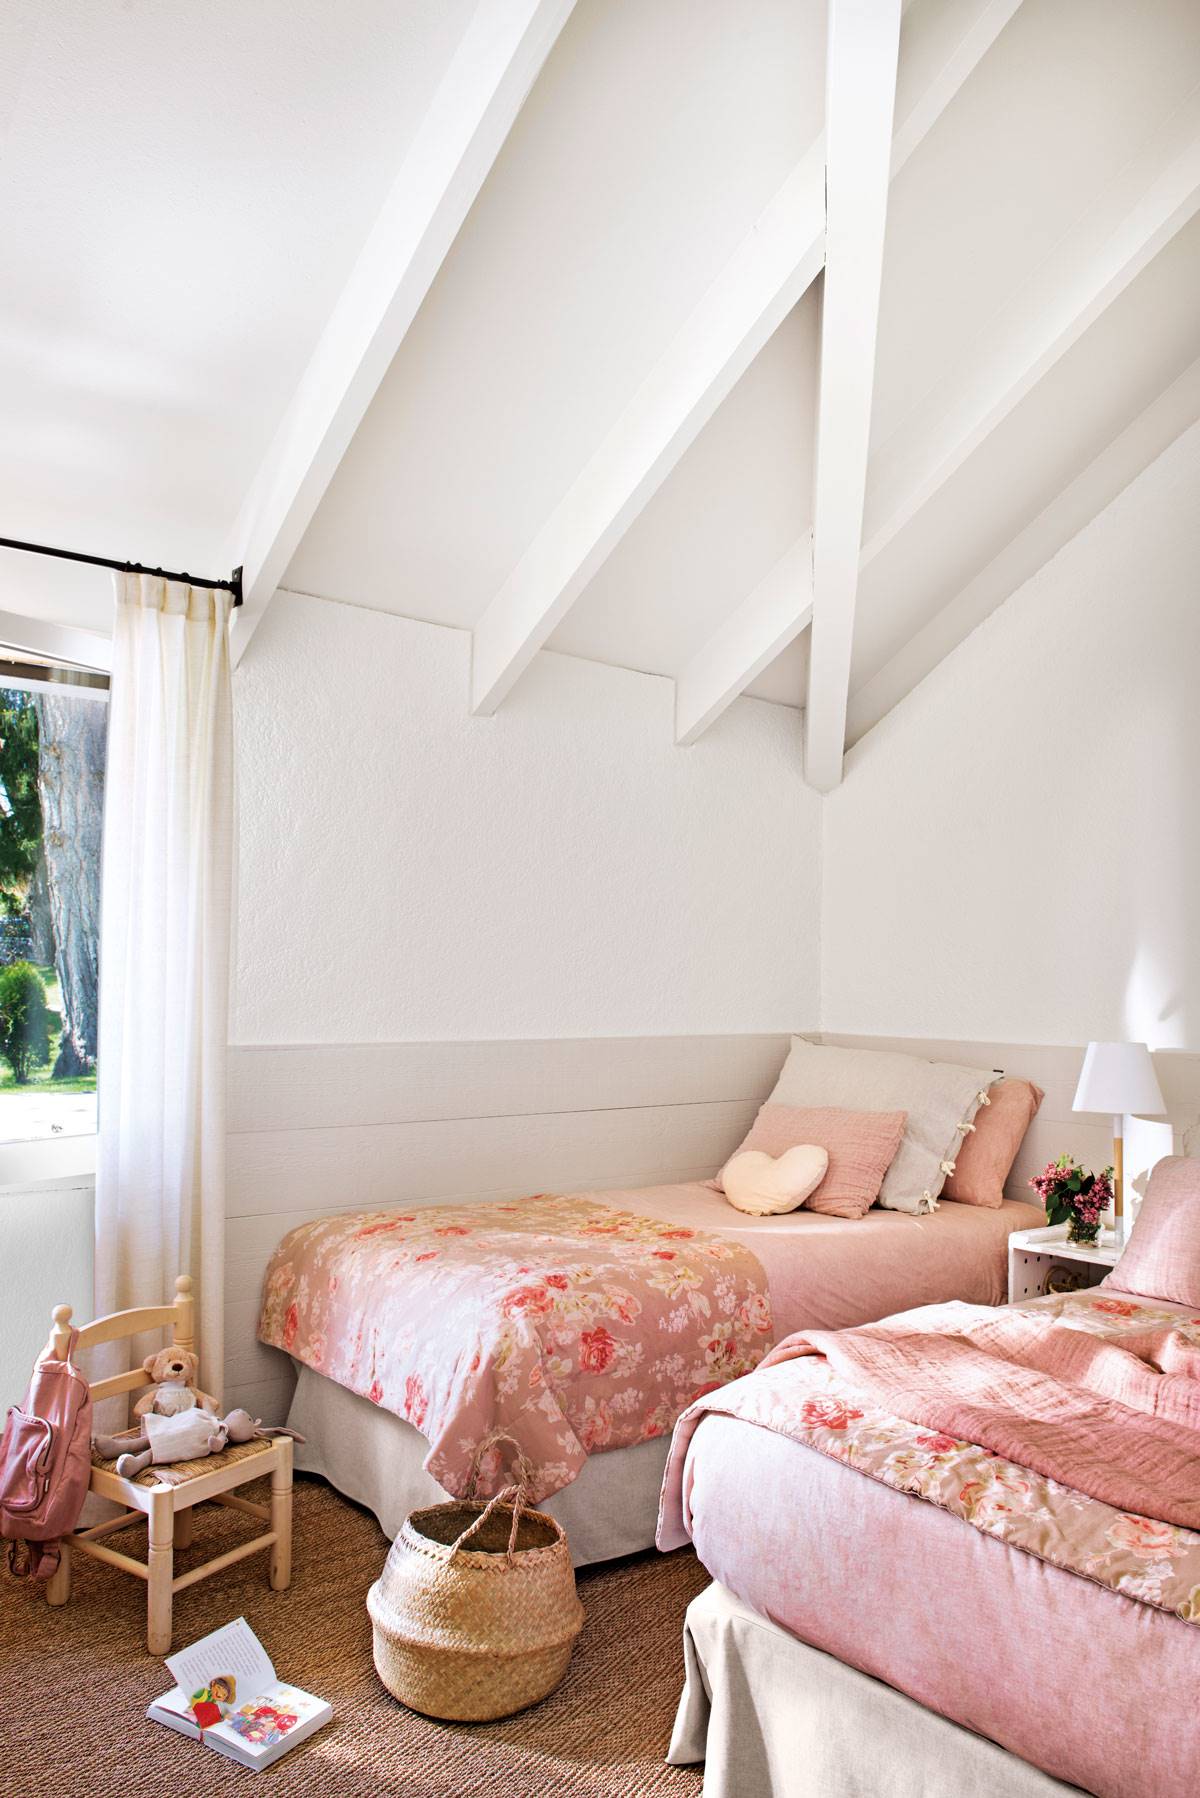 Habitacion infantil con arrimadero, techo abuhardillado y ropa de cama rosa con estampado floral-507342